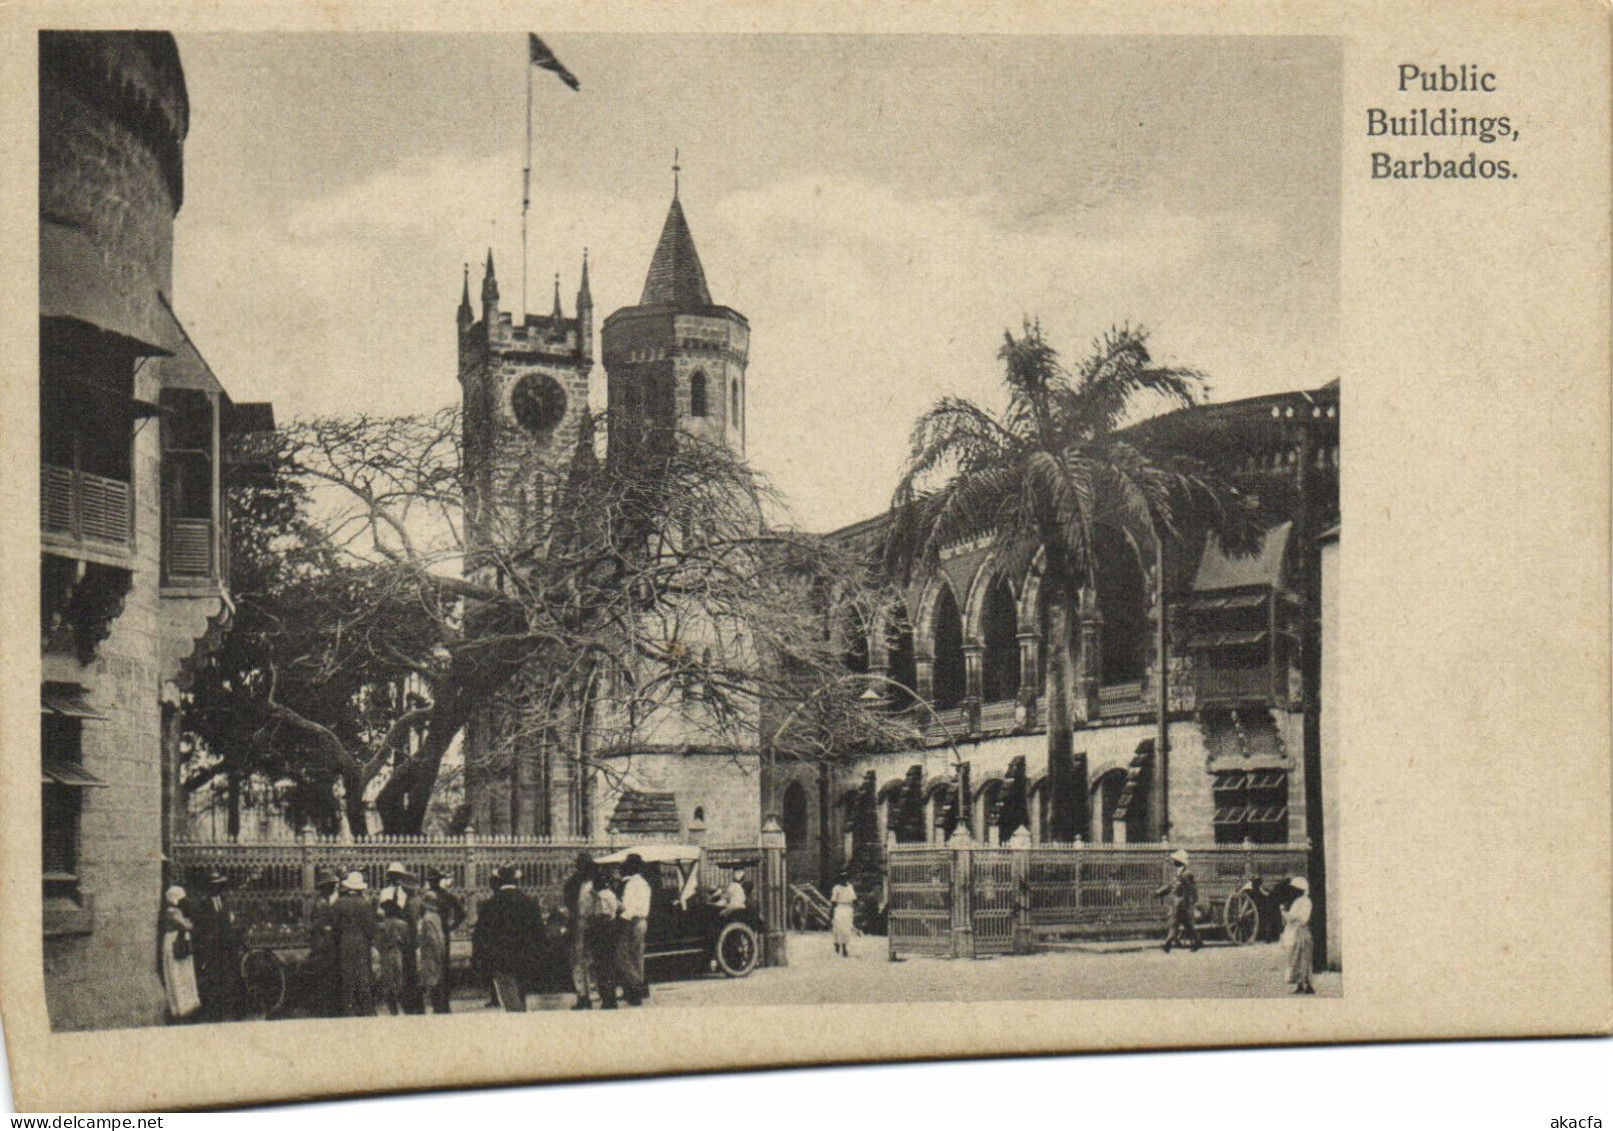 PC BARBADOS, PUBLIC BUILDINGS, Vintage Postcard (b50051) - Barbados